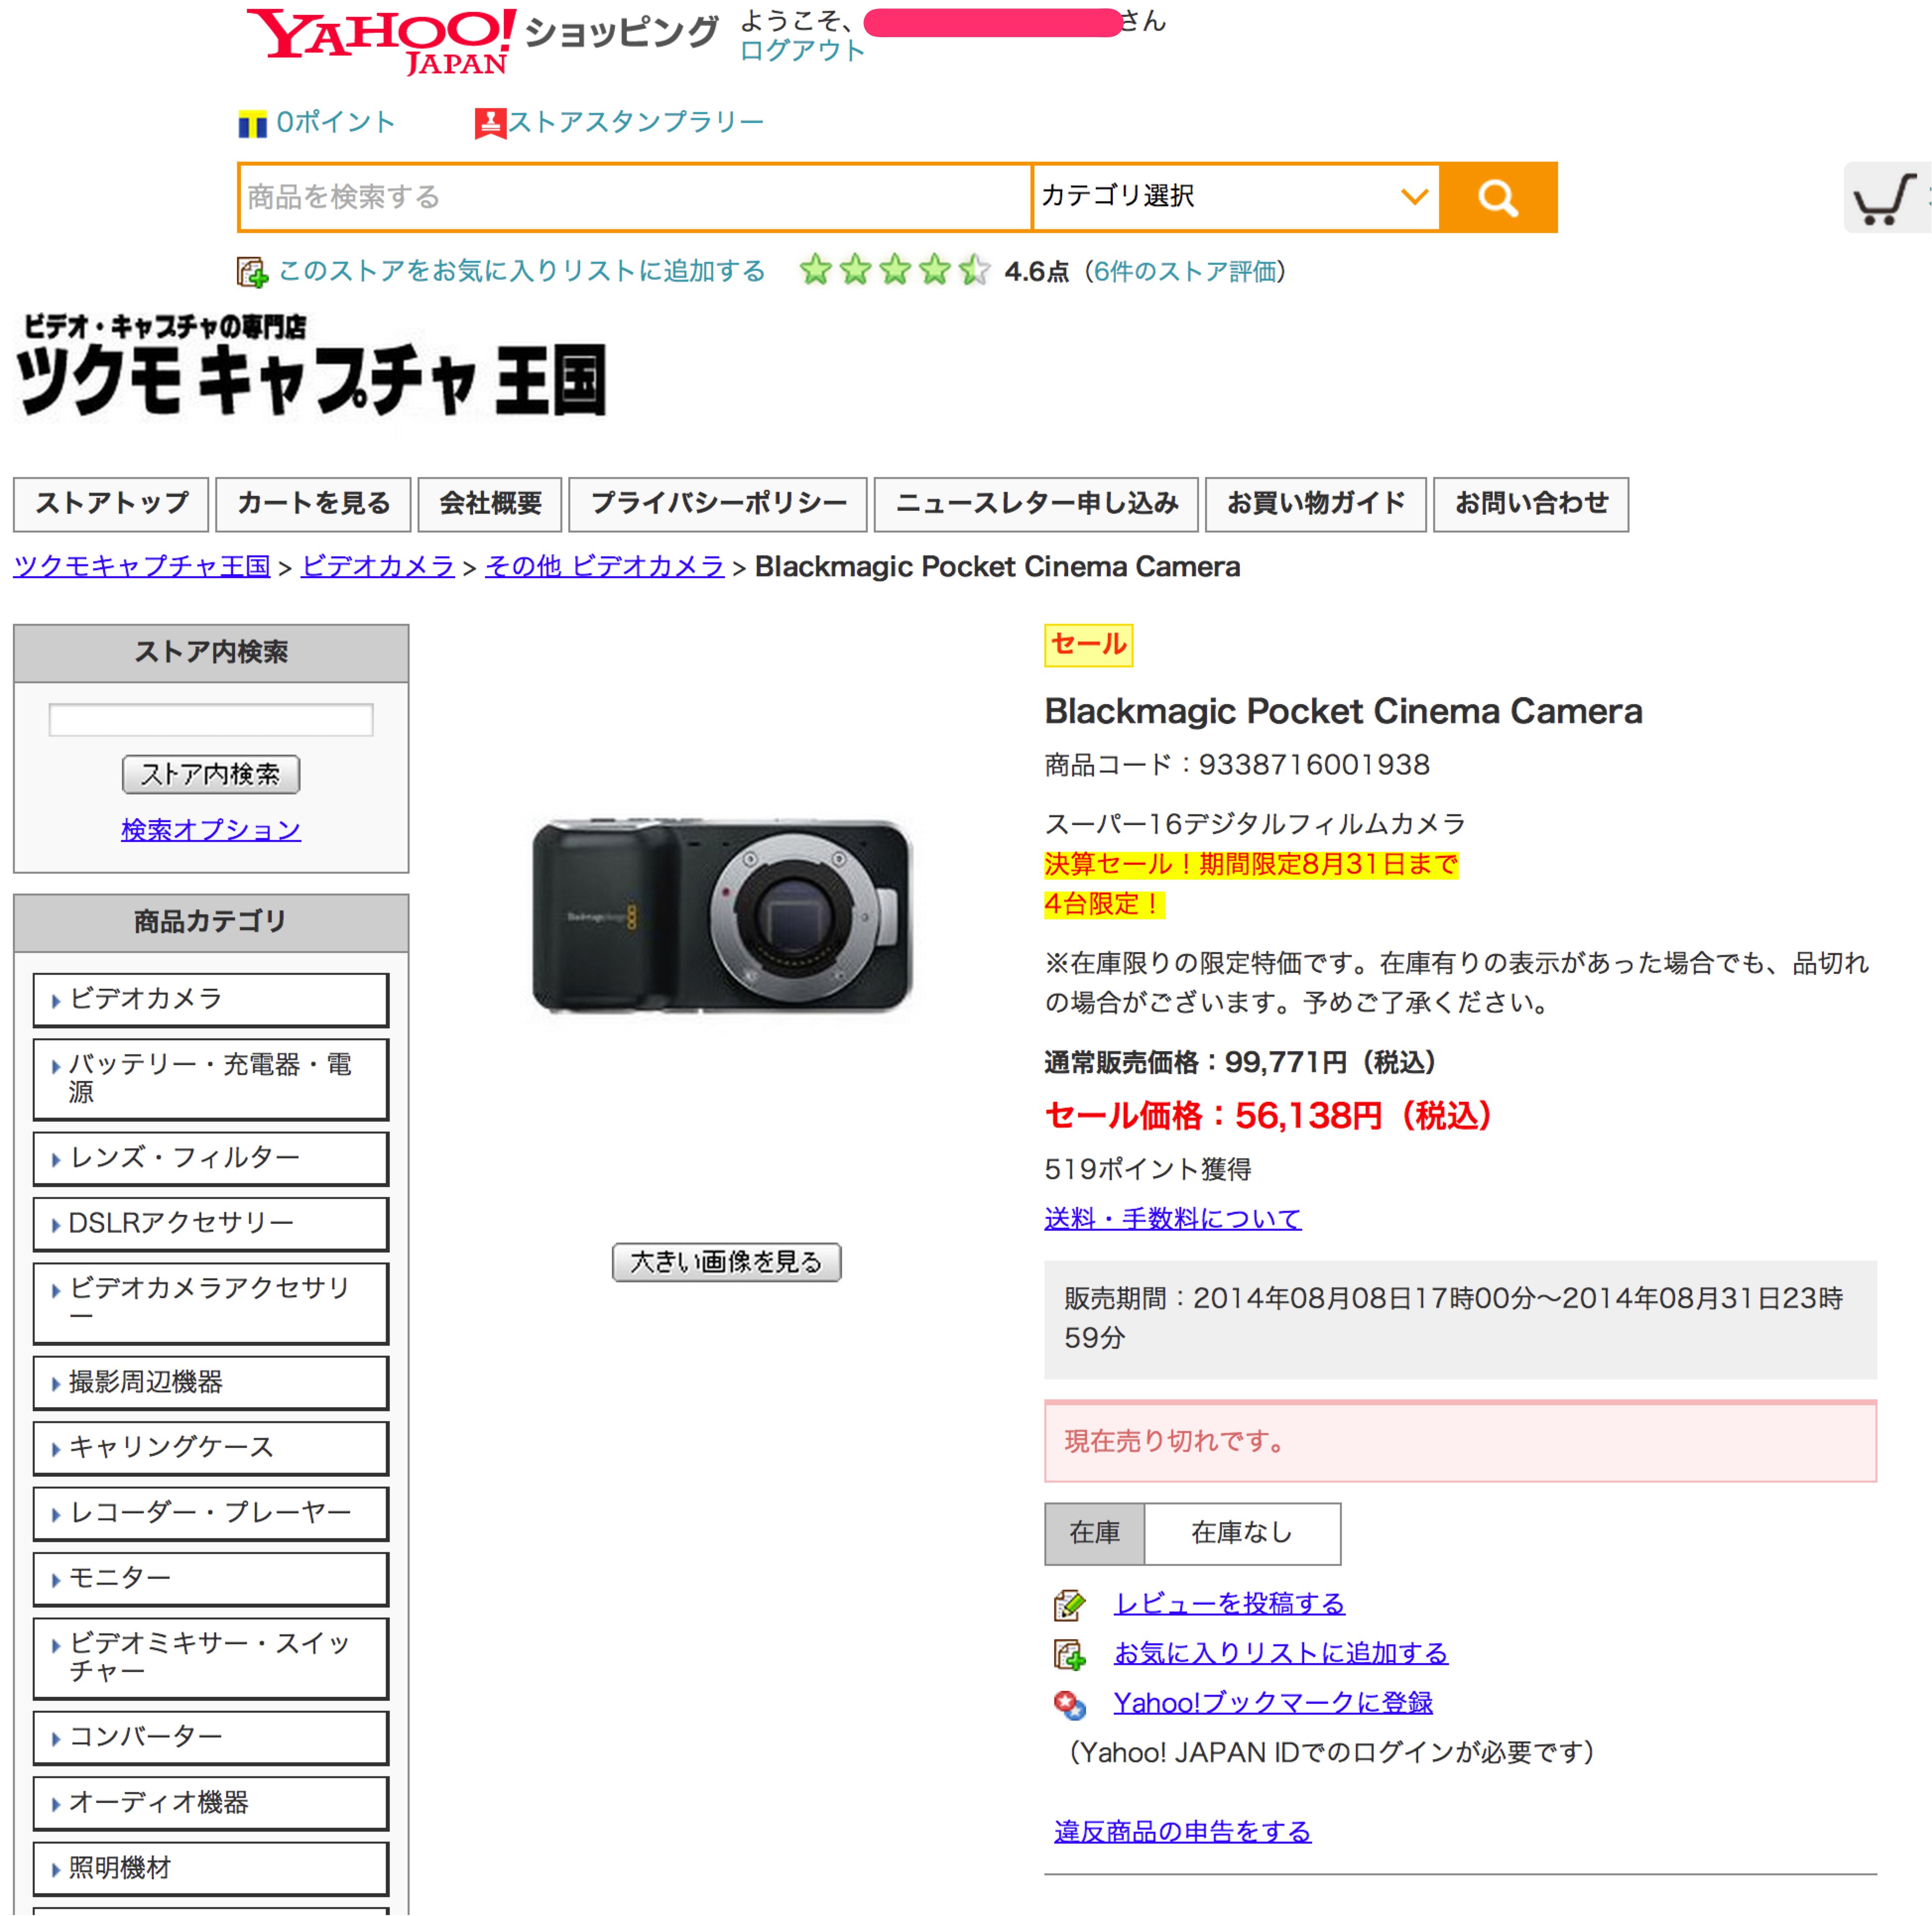 Blackmagic Pocket Cinema Camera 9338716001938 ツクモキャプチャ王国  Yahoo ショッピング  ネットで通販 オンラインショッピング